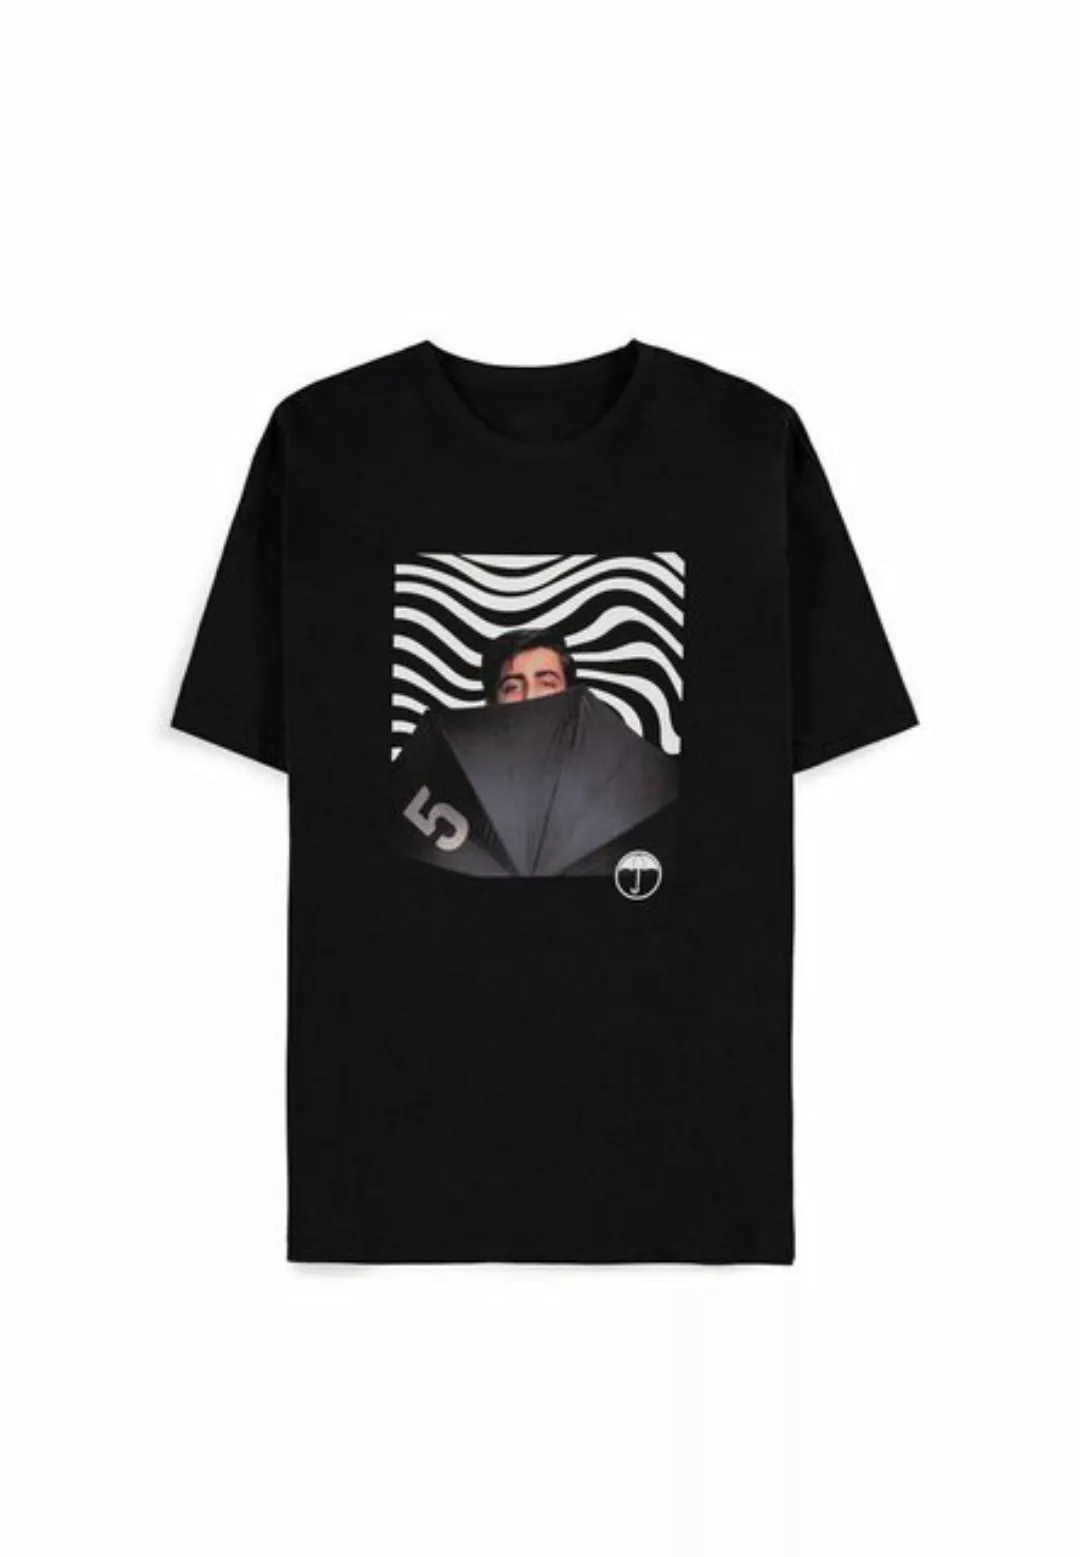 Umbrella Academy T-Shirt günstig online kaufen